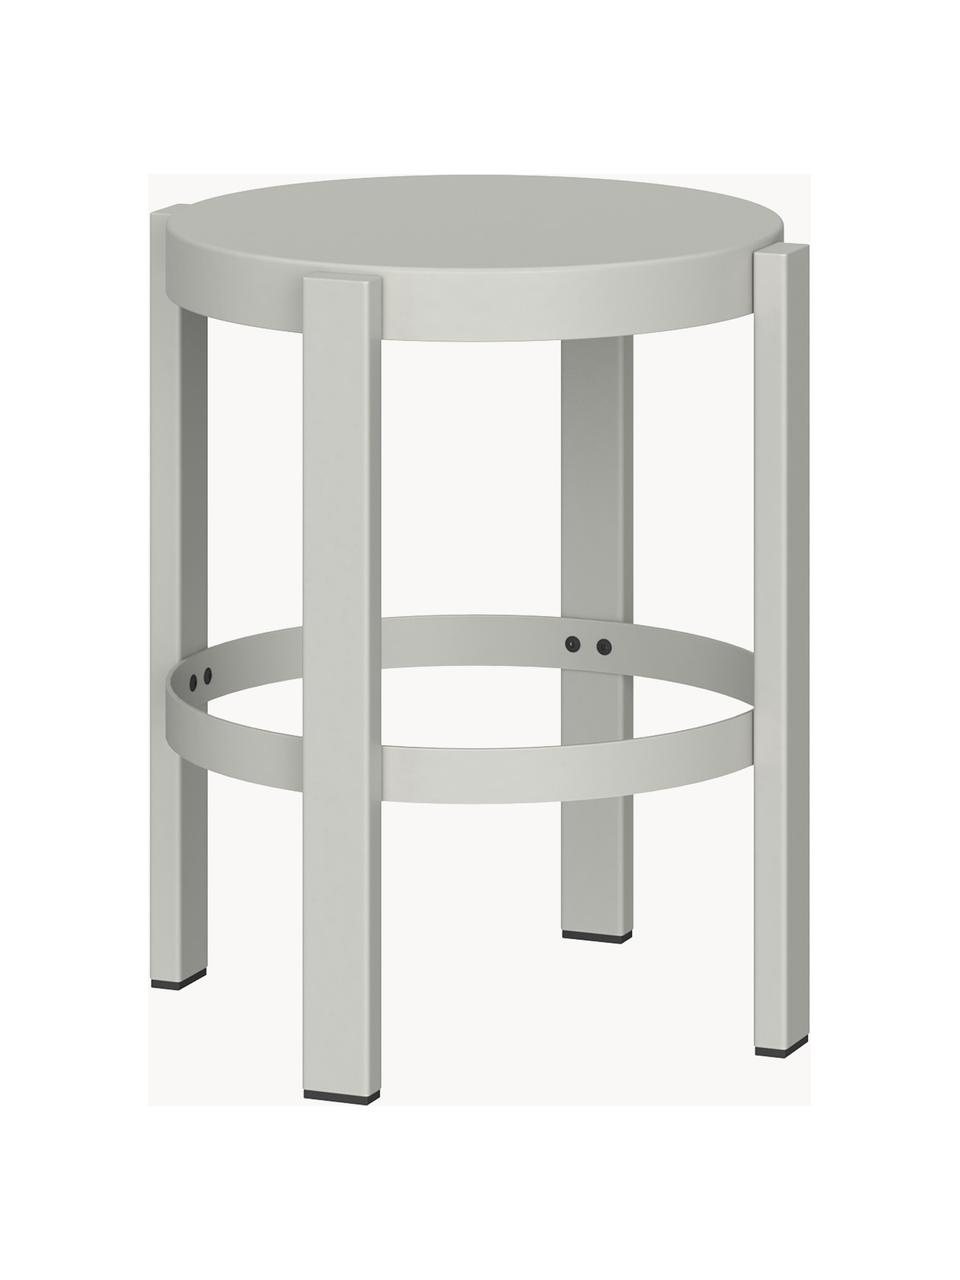 Stolička z kovu Doon, Ocel s práškovým nástřikem, Světle šedá, Ø 35 cm, V 45 cm